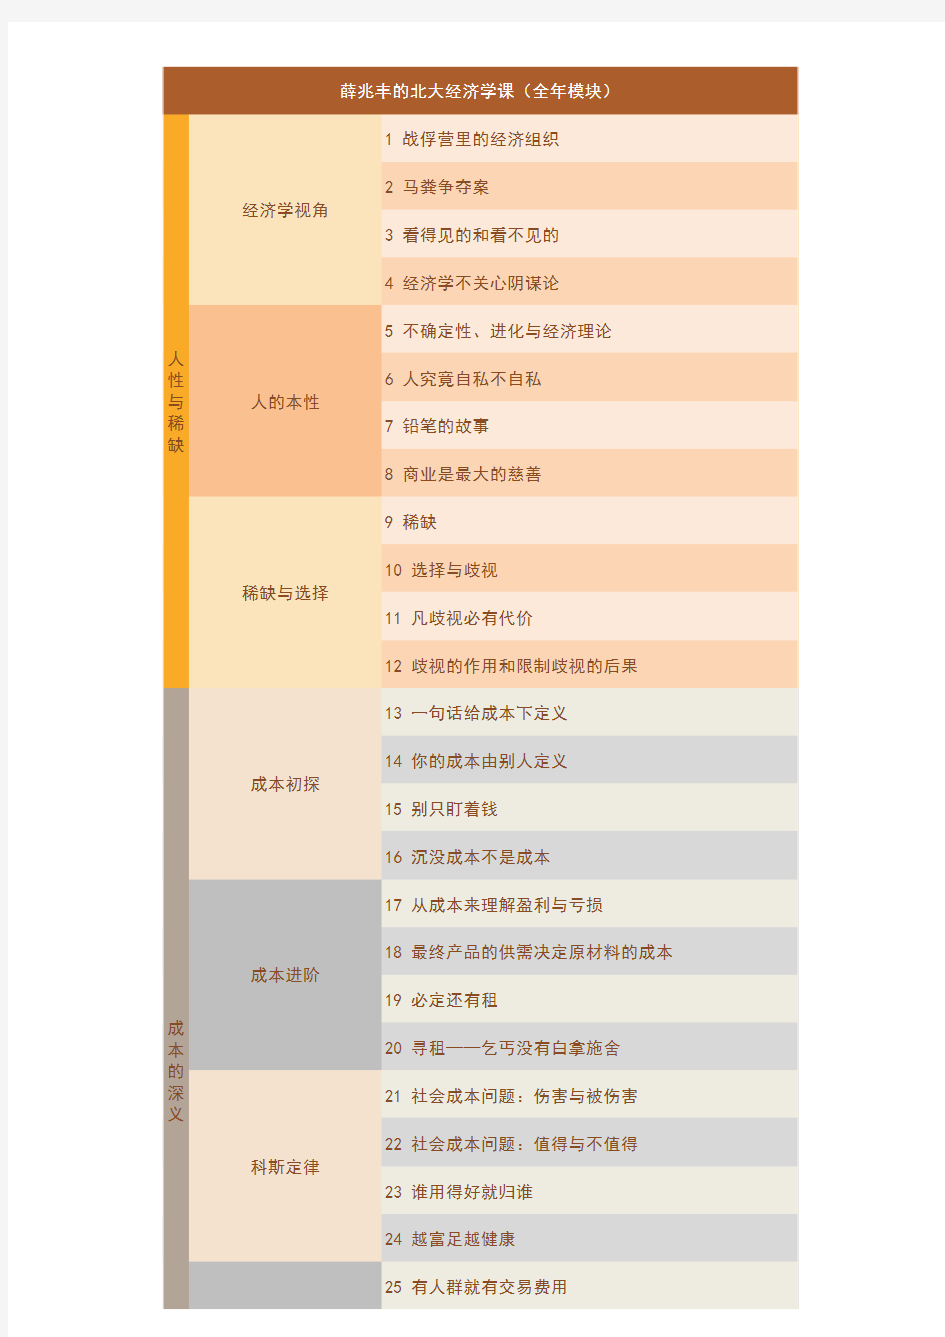 薛兆丰的北大经济学课程全年课表